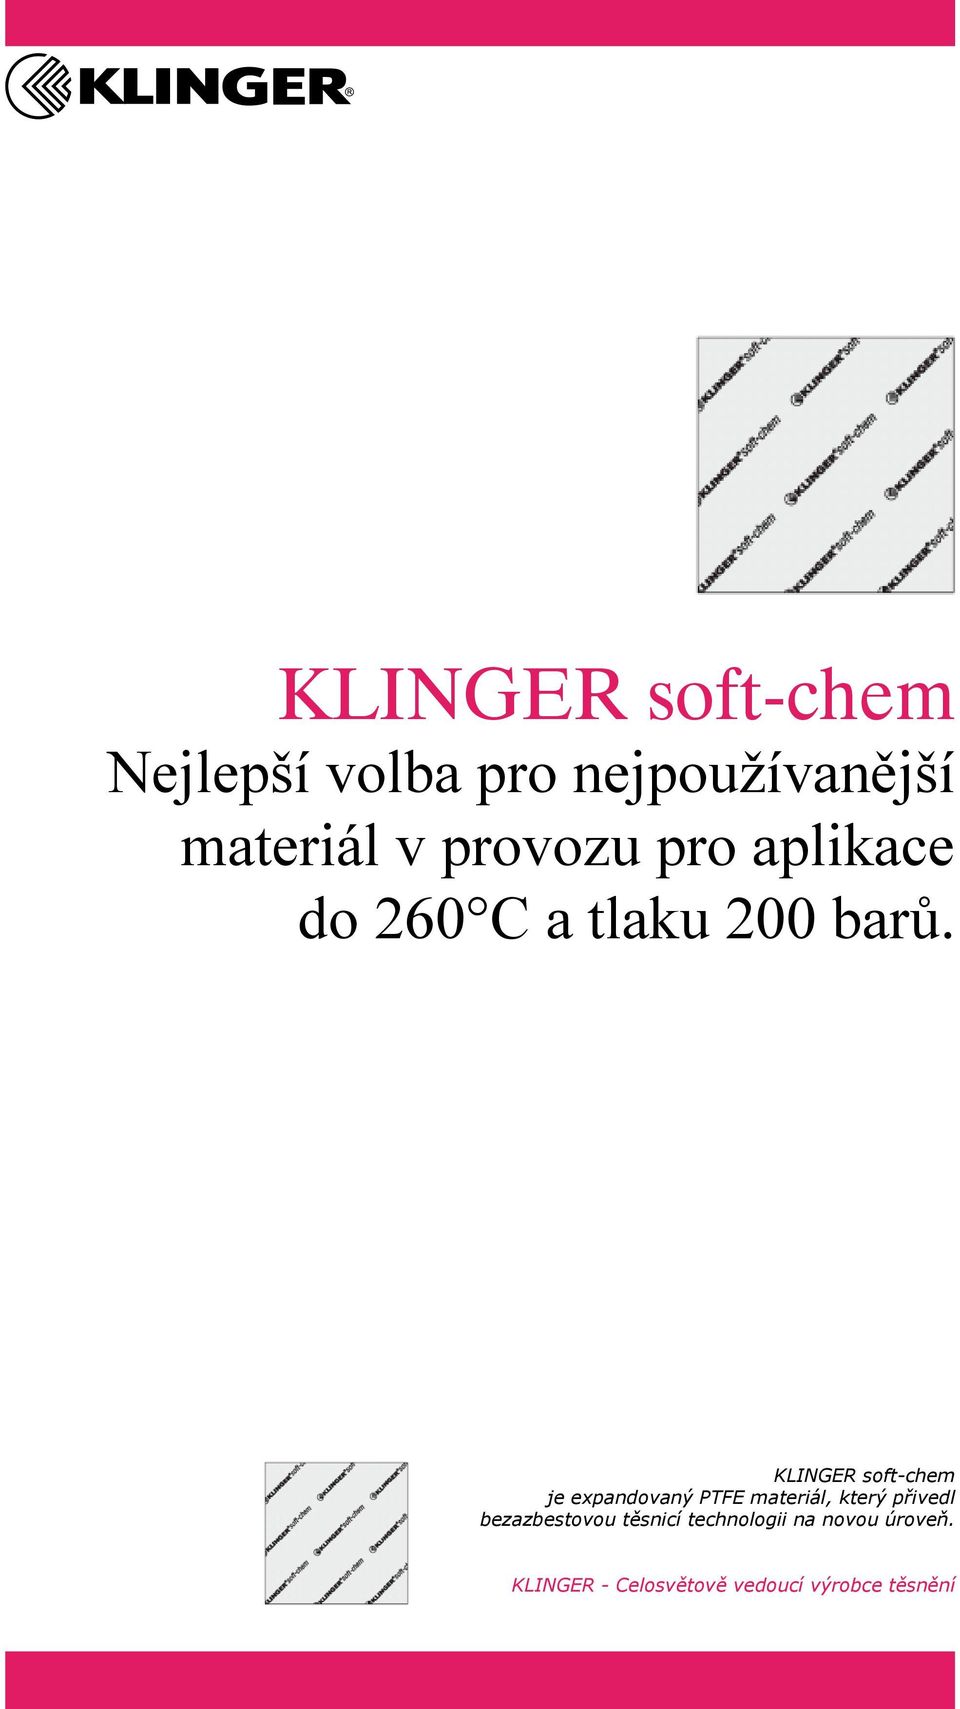 KLINGER soft-chem je expandovaný PTFE materiál, který přivedl